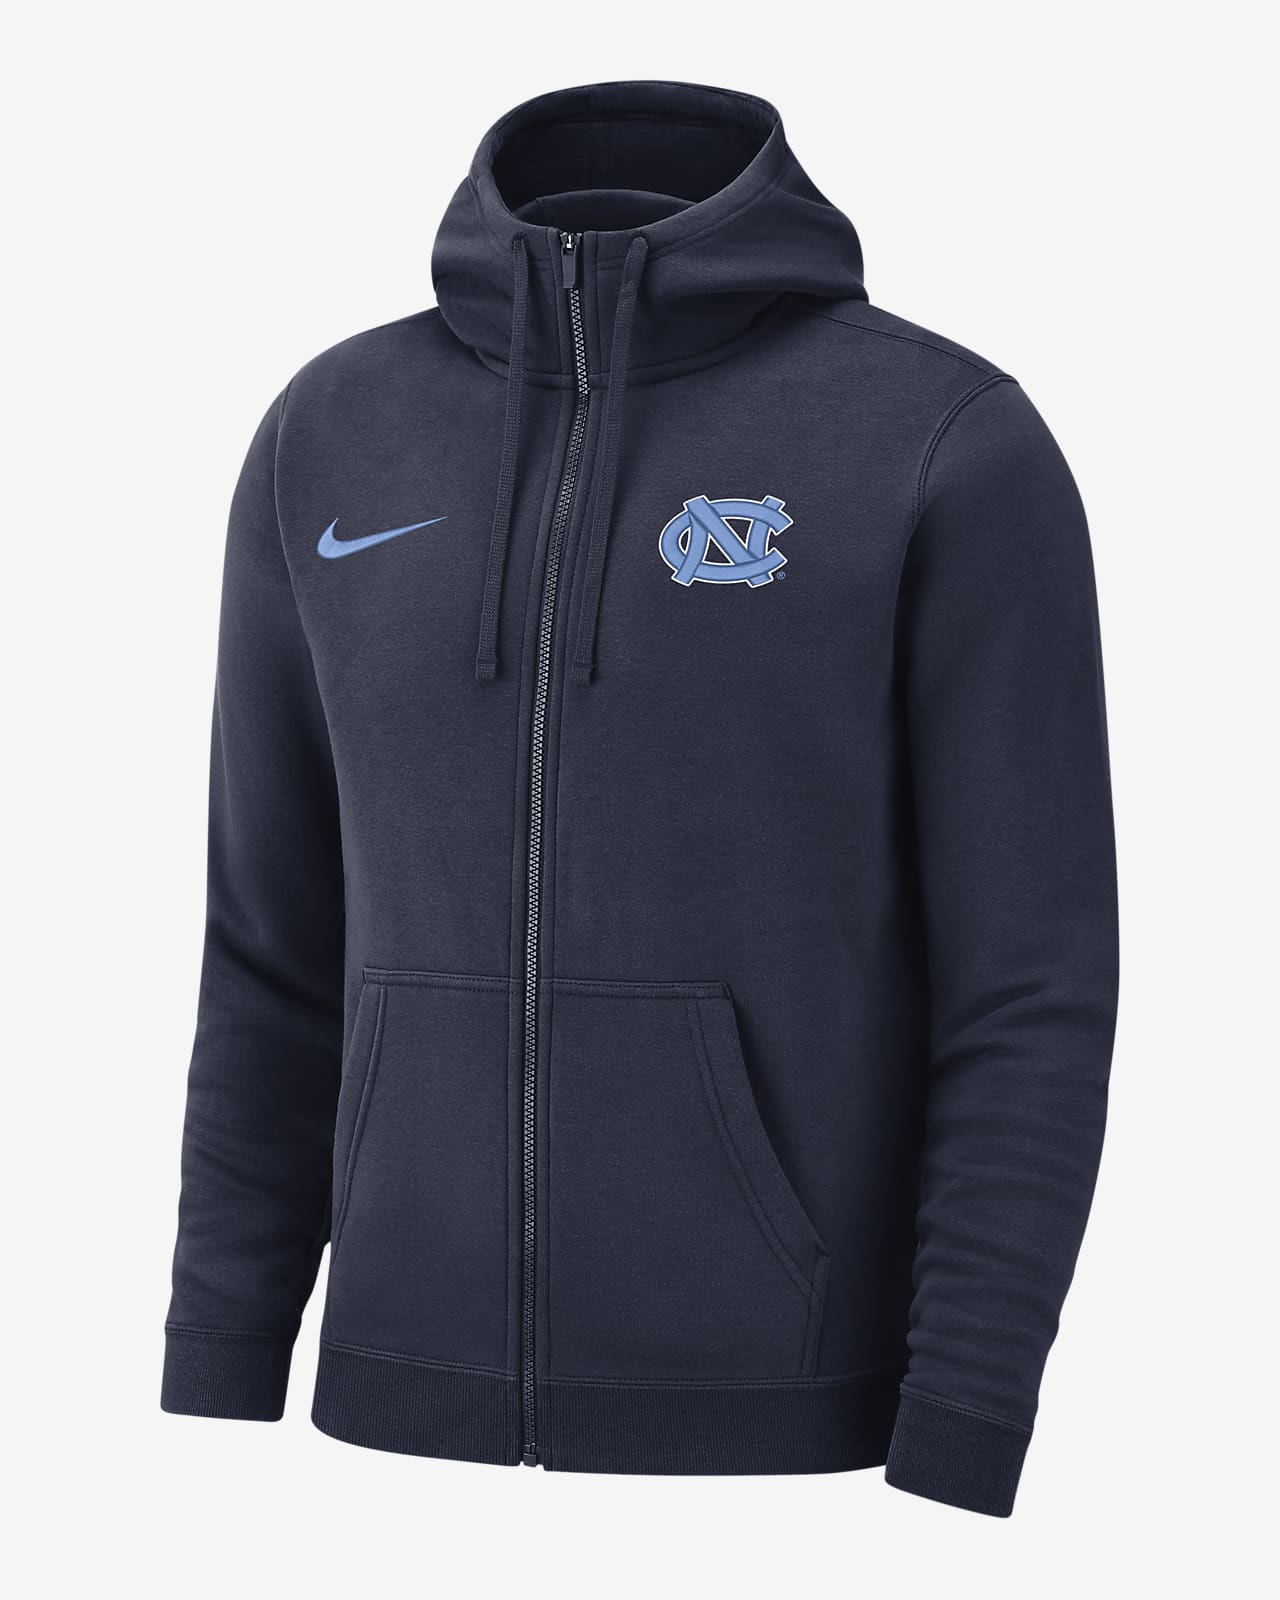 UNC Club Fleece Men's Nike College Full-Zip Hoodie